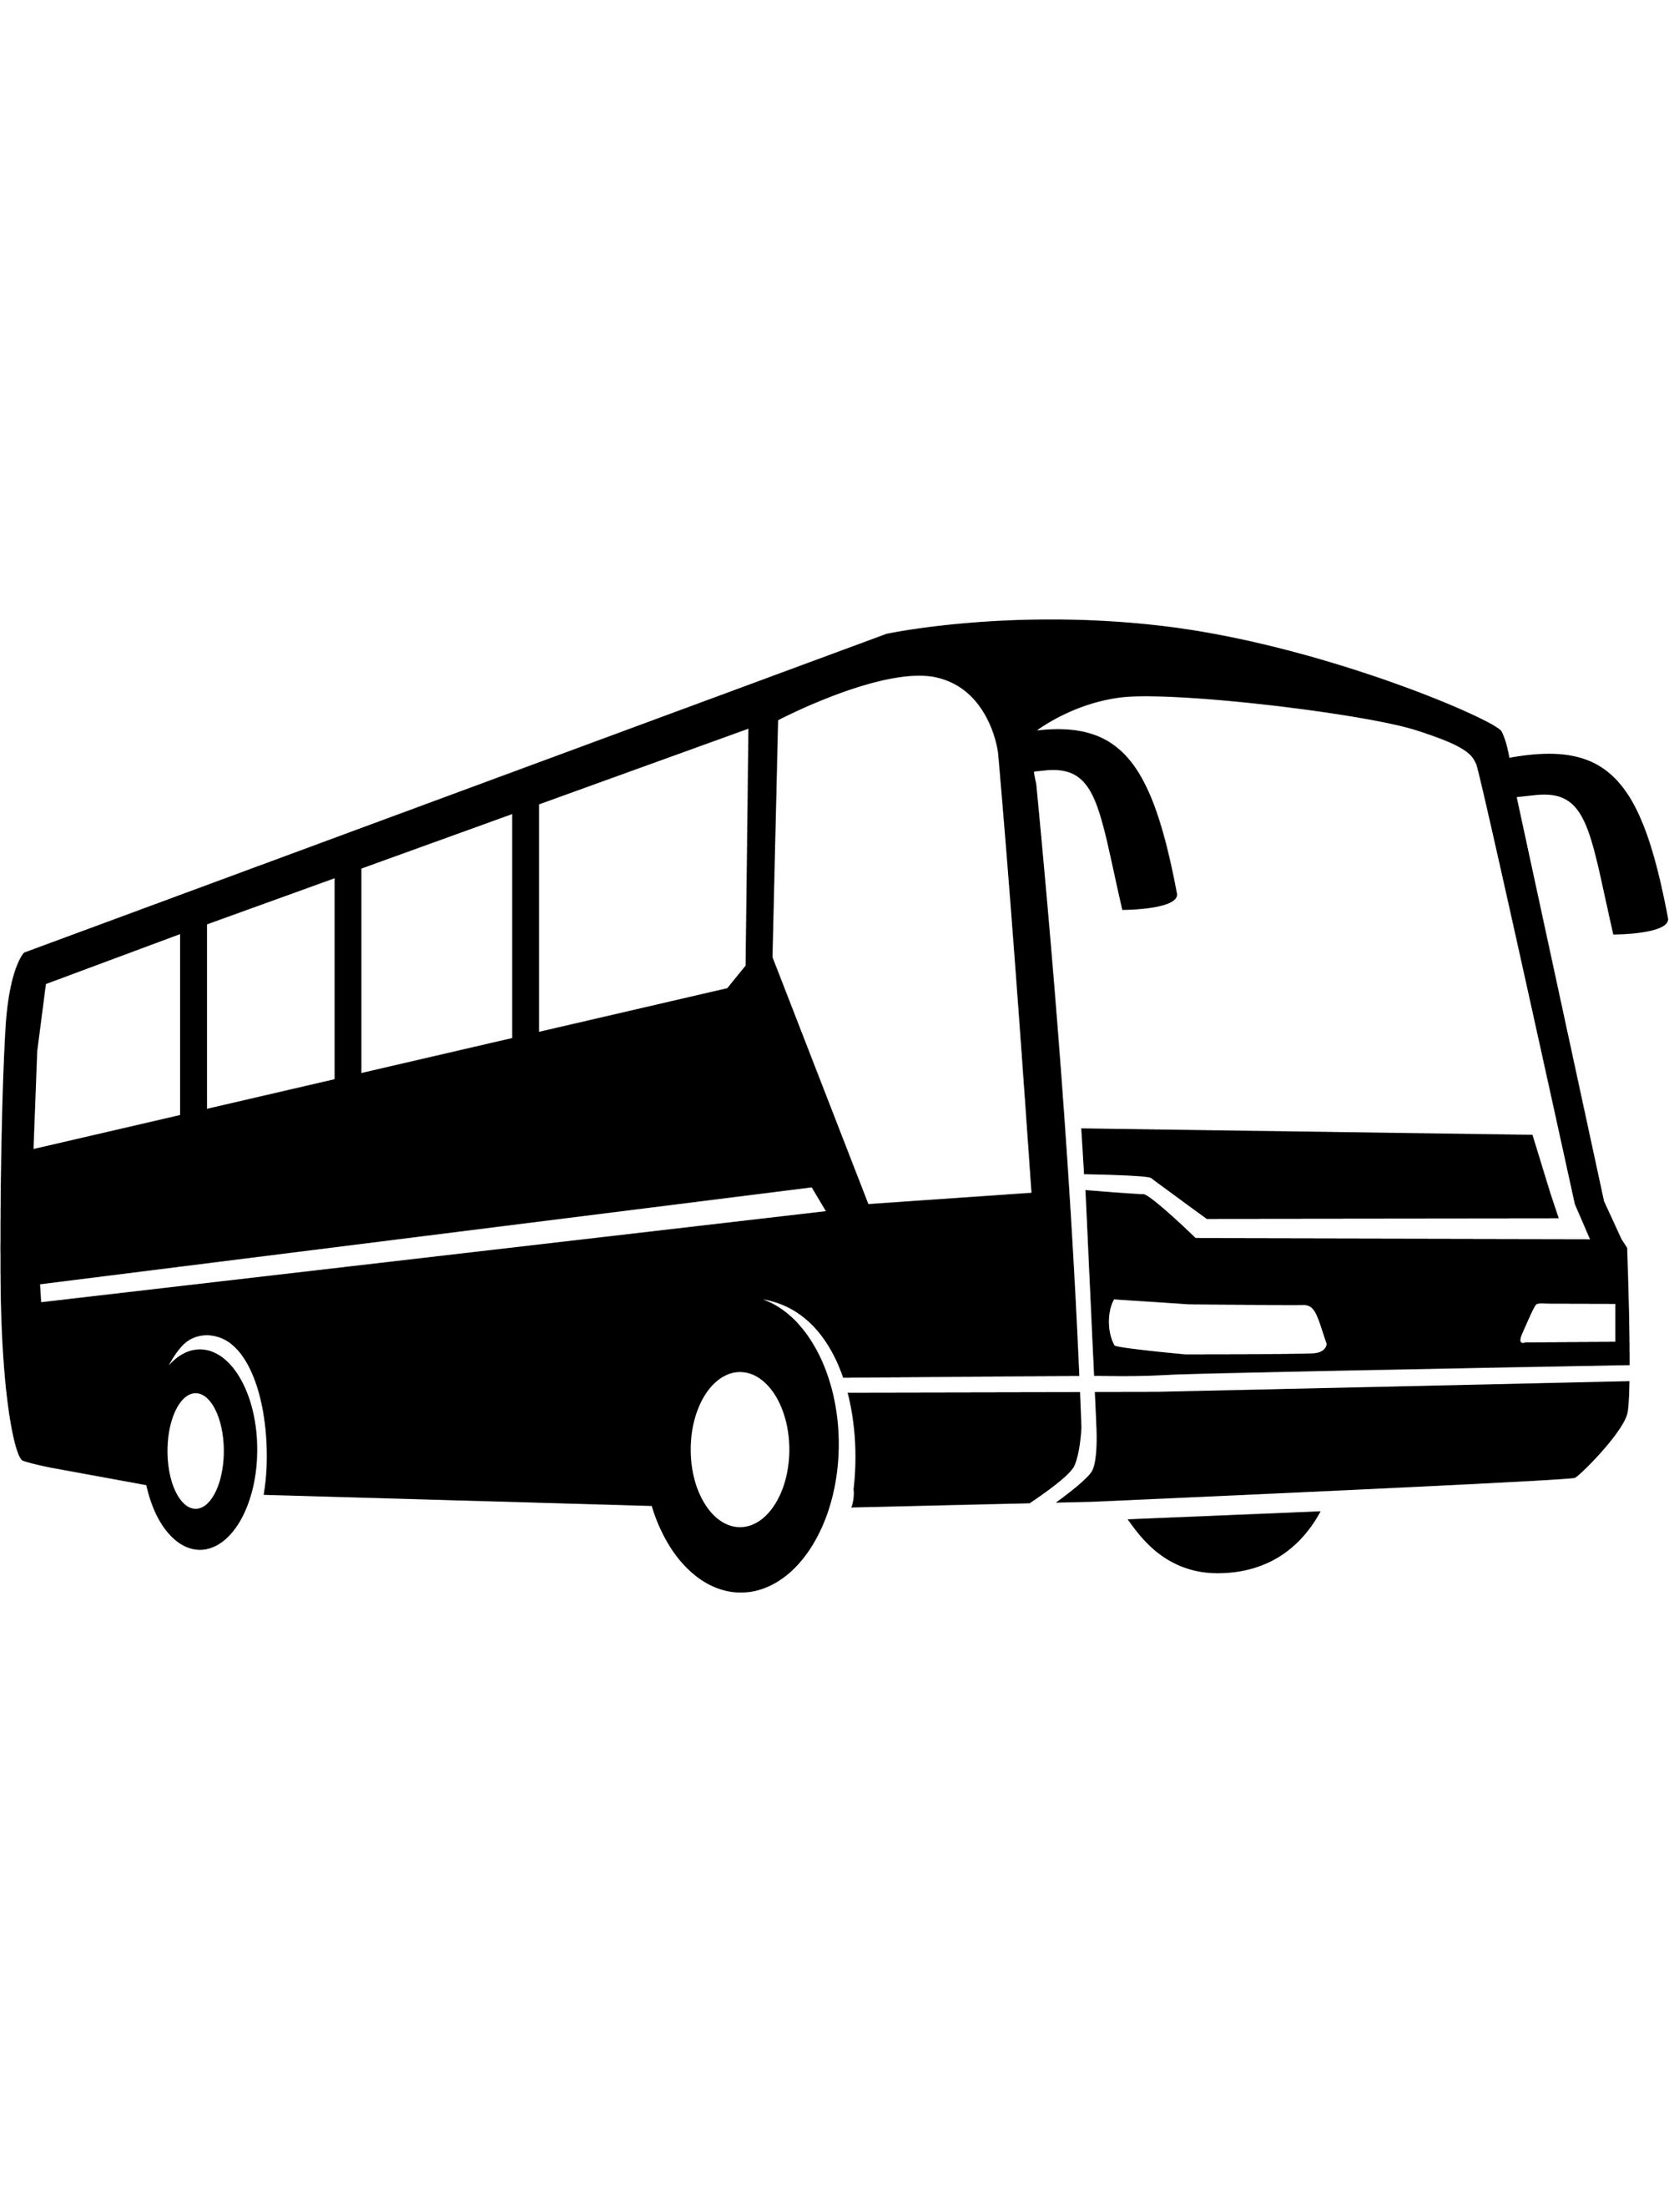 Бус тайм автобус 5а. Информация в автобусе. Пежо 217 автобус. 549 Автобуса трафарет.